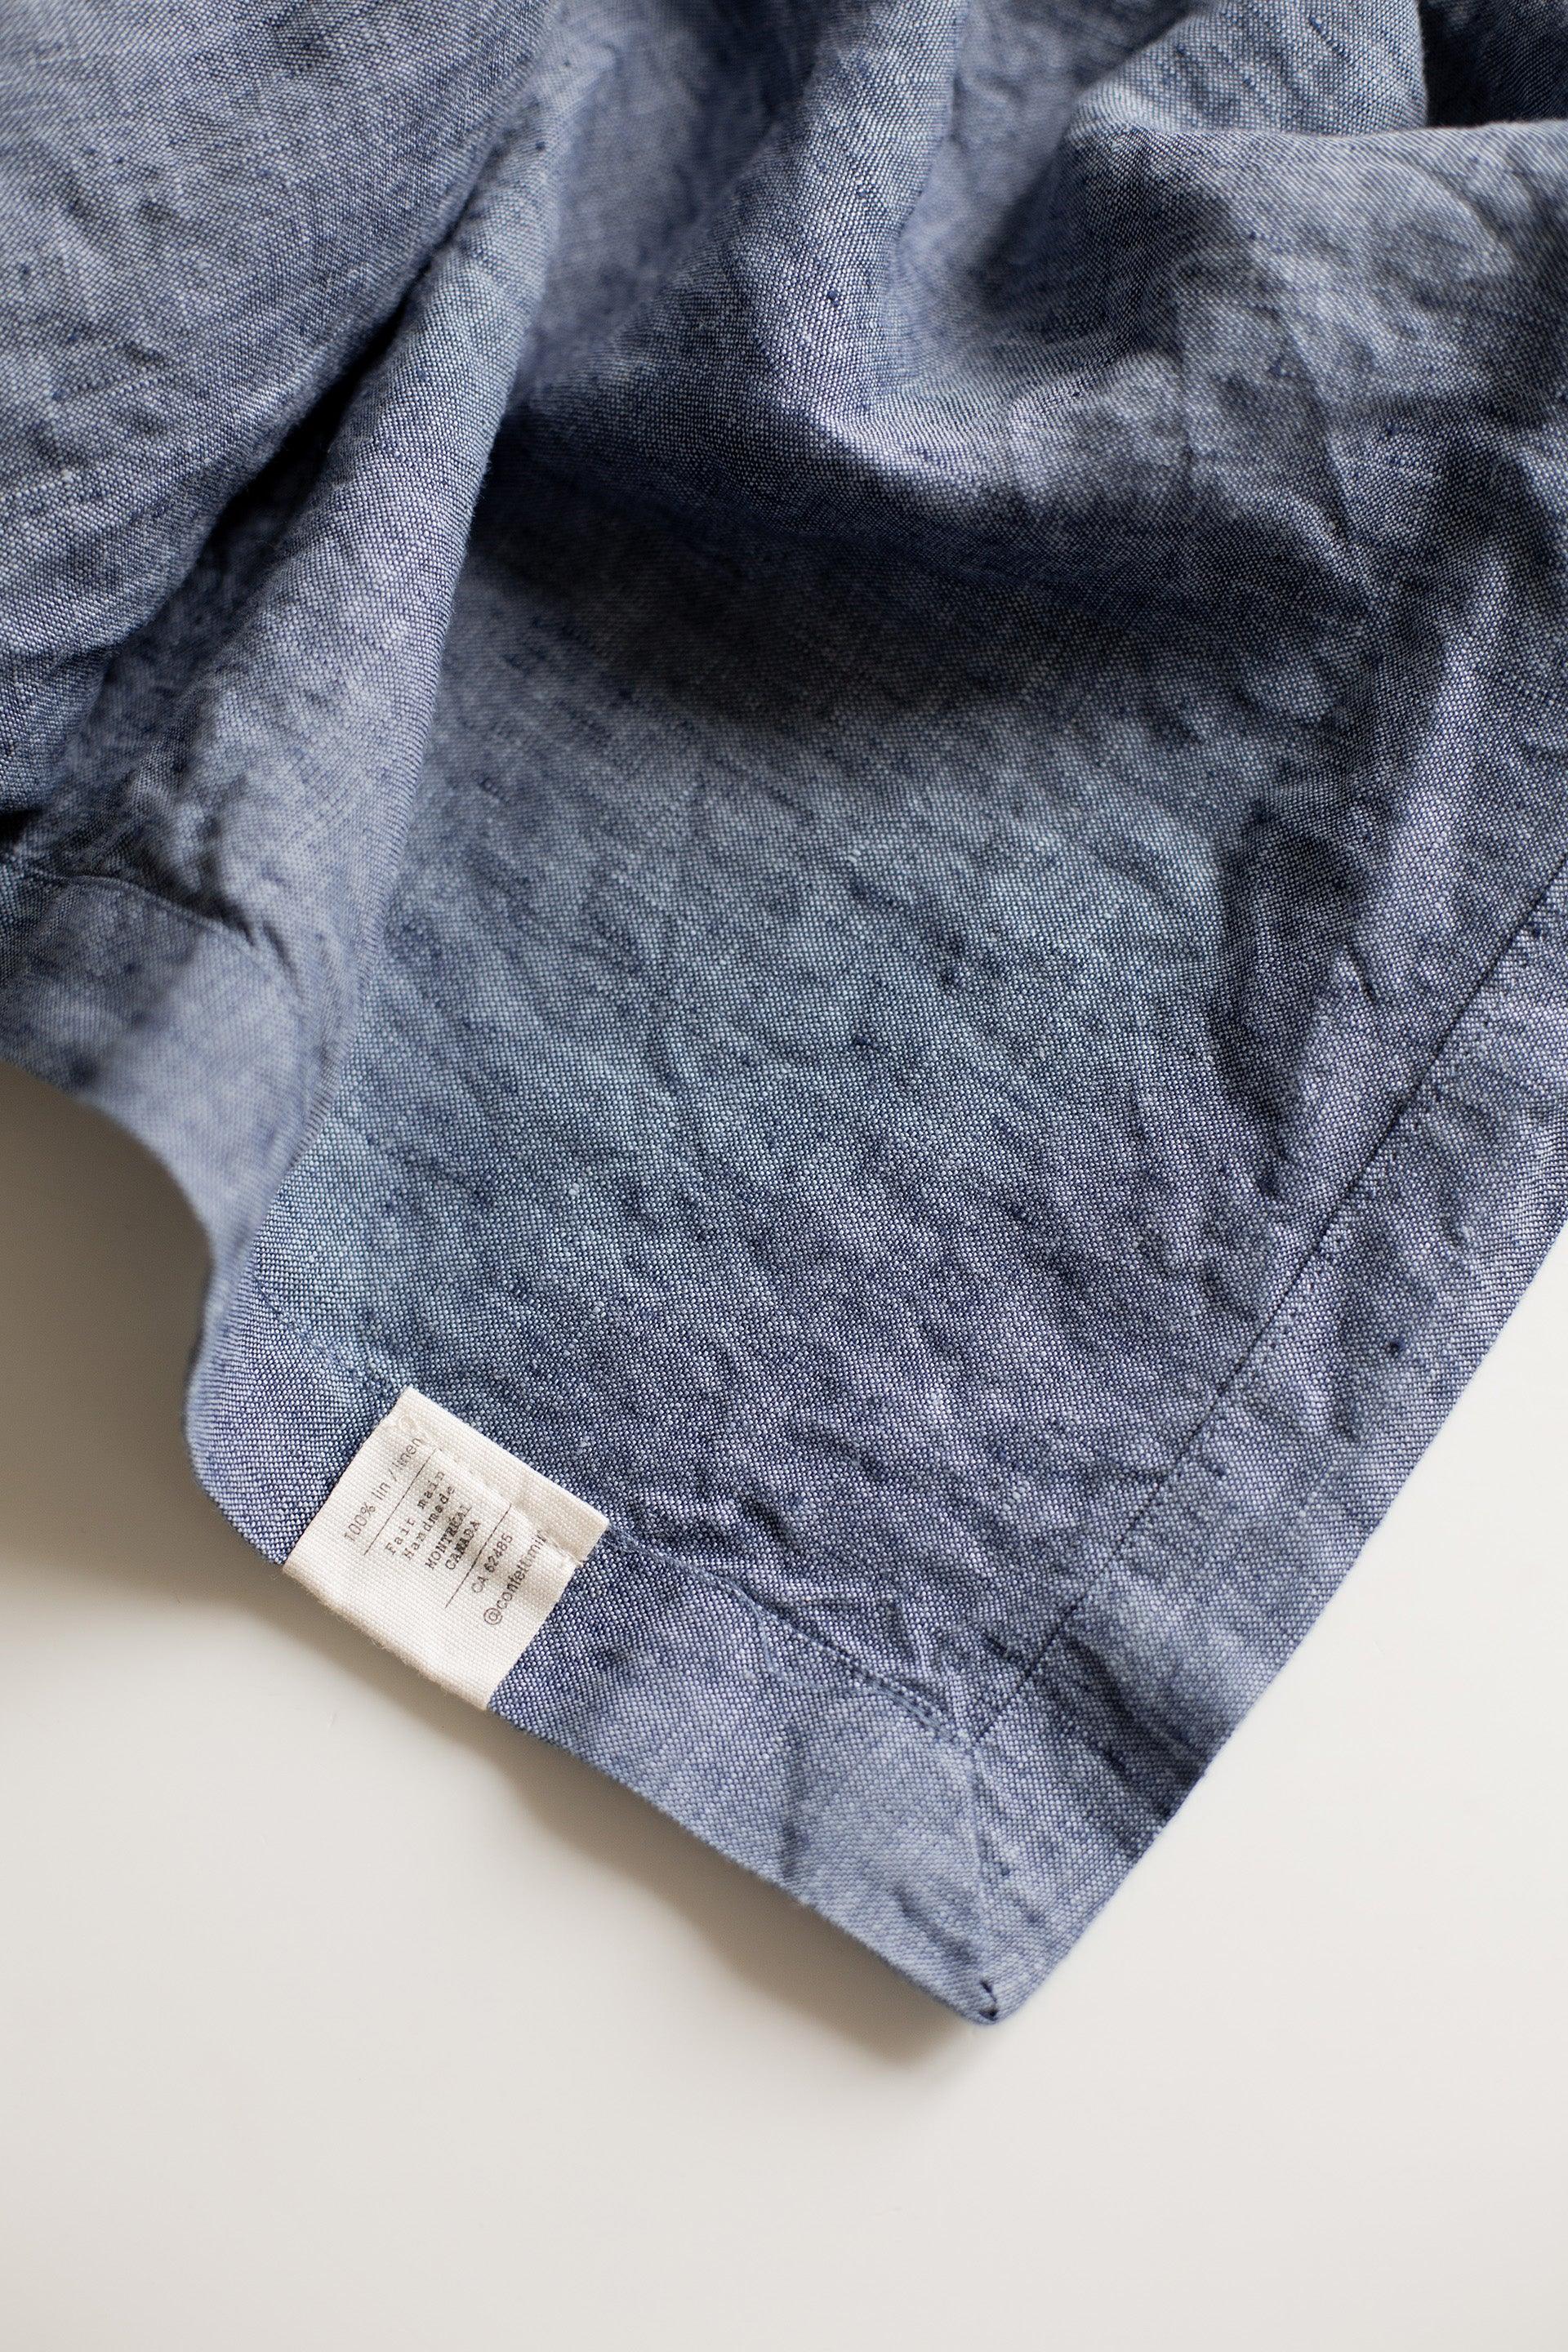 Linen Tablecloth - Blue - Confetti Mill